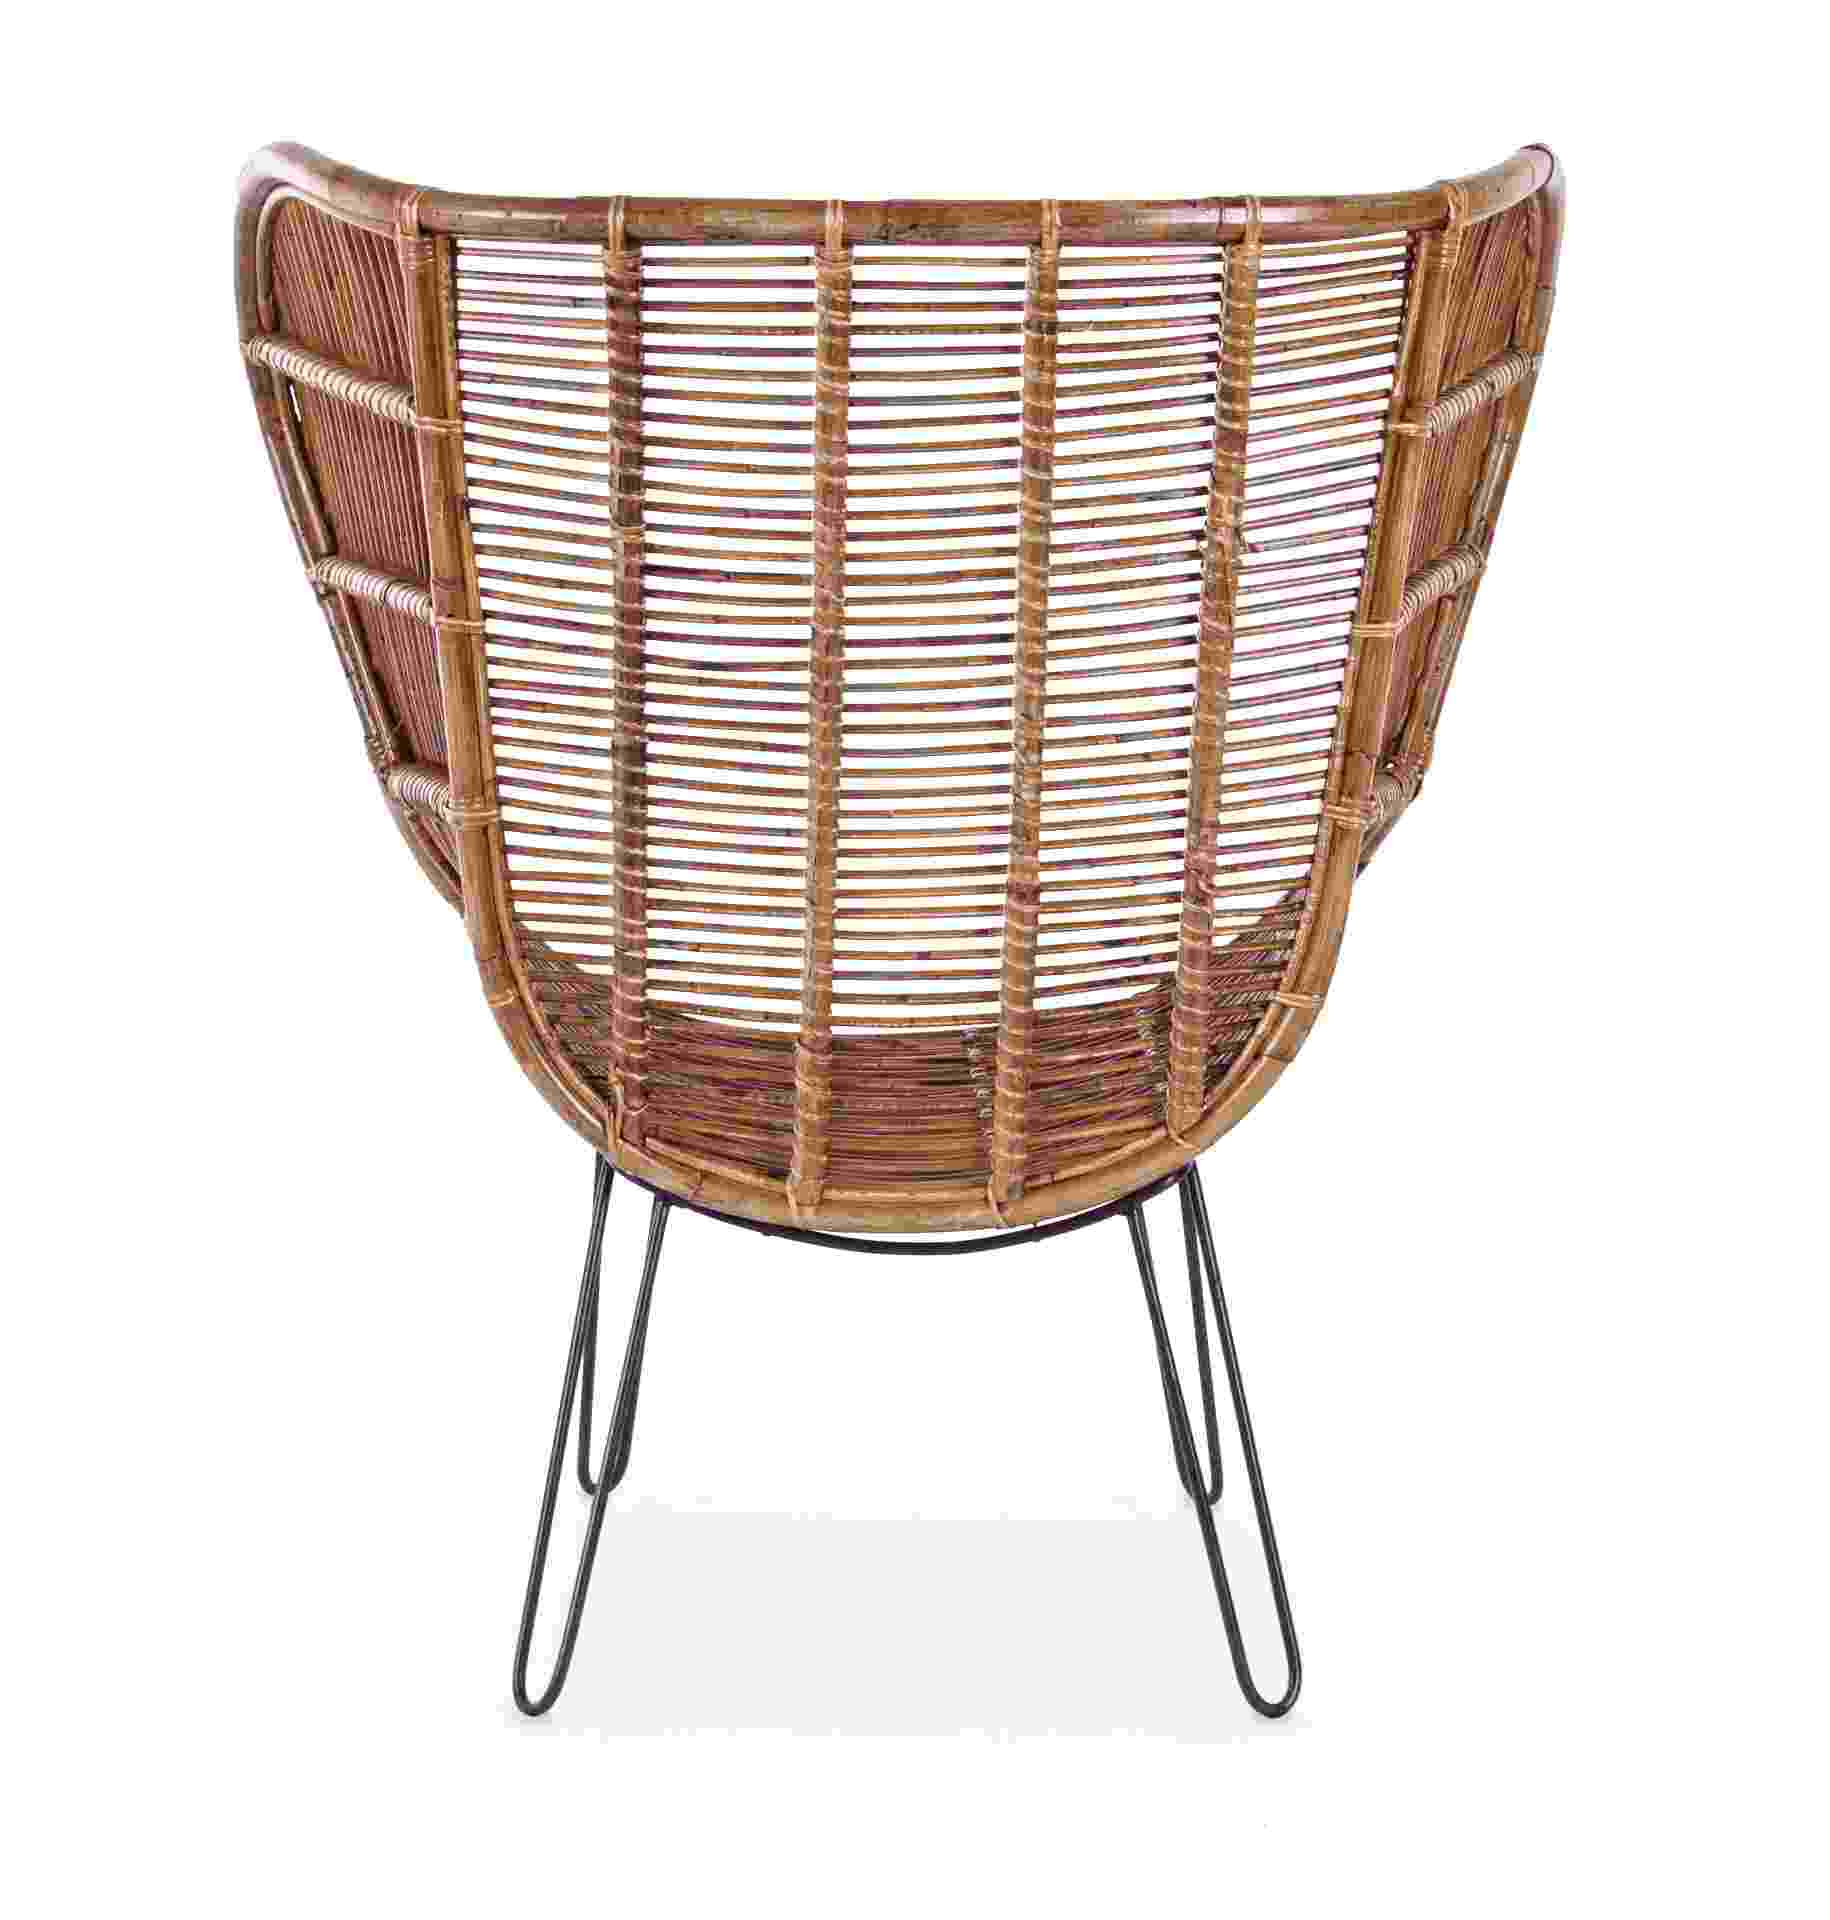 Der Sessel Estefan überzeugt mit seinem klassischen Design. Gefertigt wurde er aus Rattan, welches einen braunen Farbton besitzt. Das Gestell ist aus Metall und hat eine schwarze Farbe. Der Sessel besitzt eine Sitzhöhe von 42 cm. Die Breite beträgt 100 cm